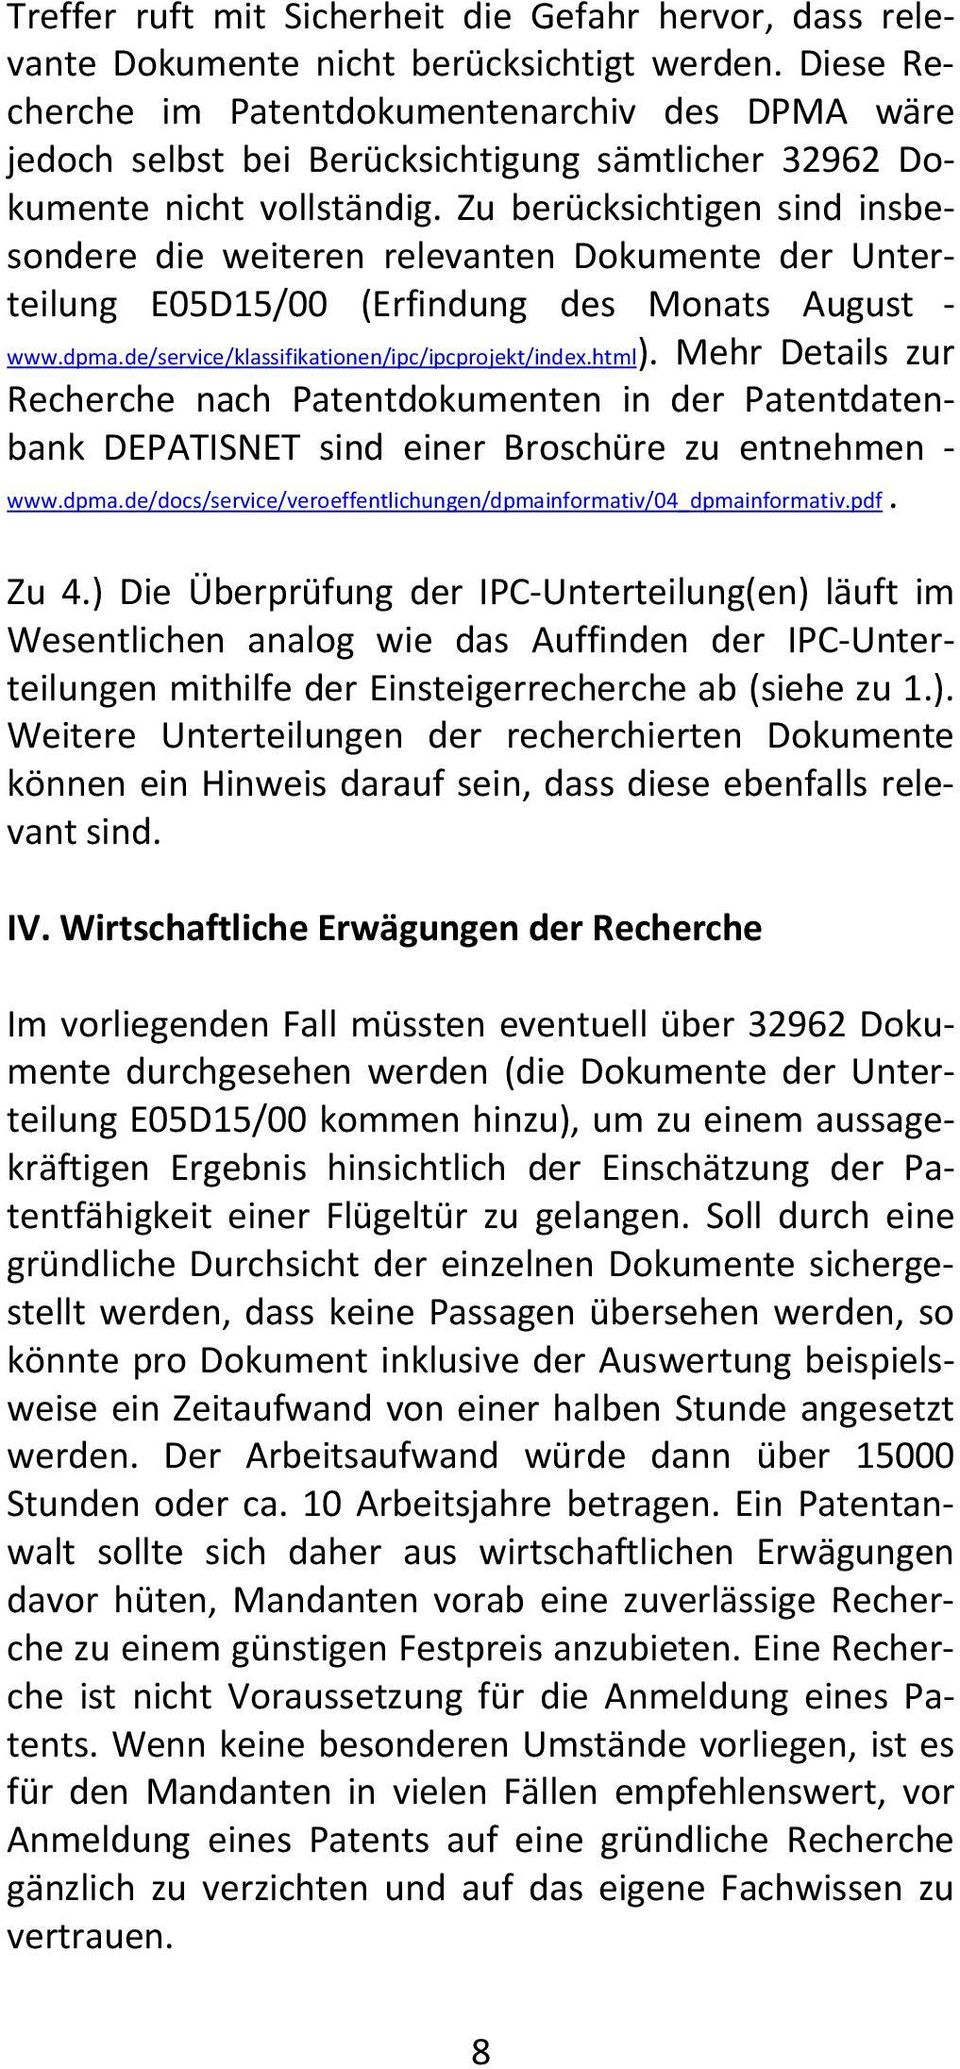 Zu berücksichtigen sind insbesondere die weiteren relevanten Dokumente der Unterteilung E05D15/00 (Erfindung des Monats August www.dpma.de/service/klassifikationen/ipc/ipcprojekt/index.html).